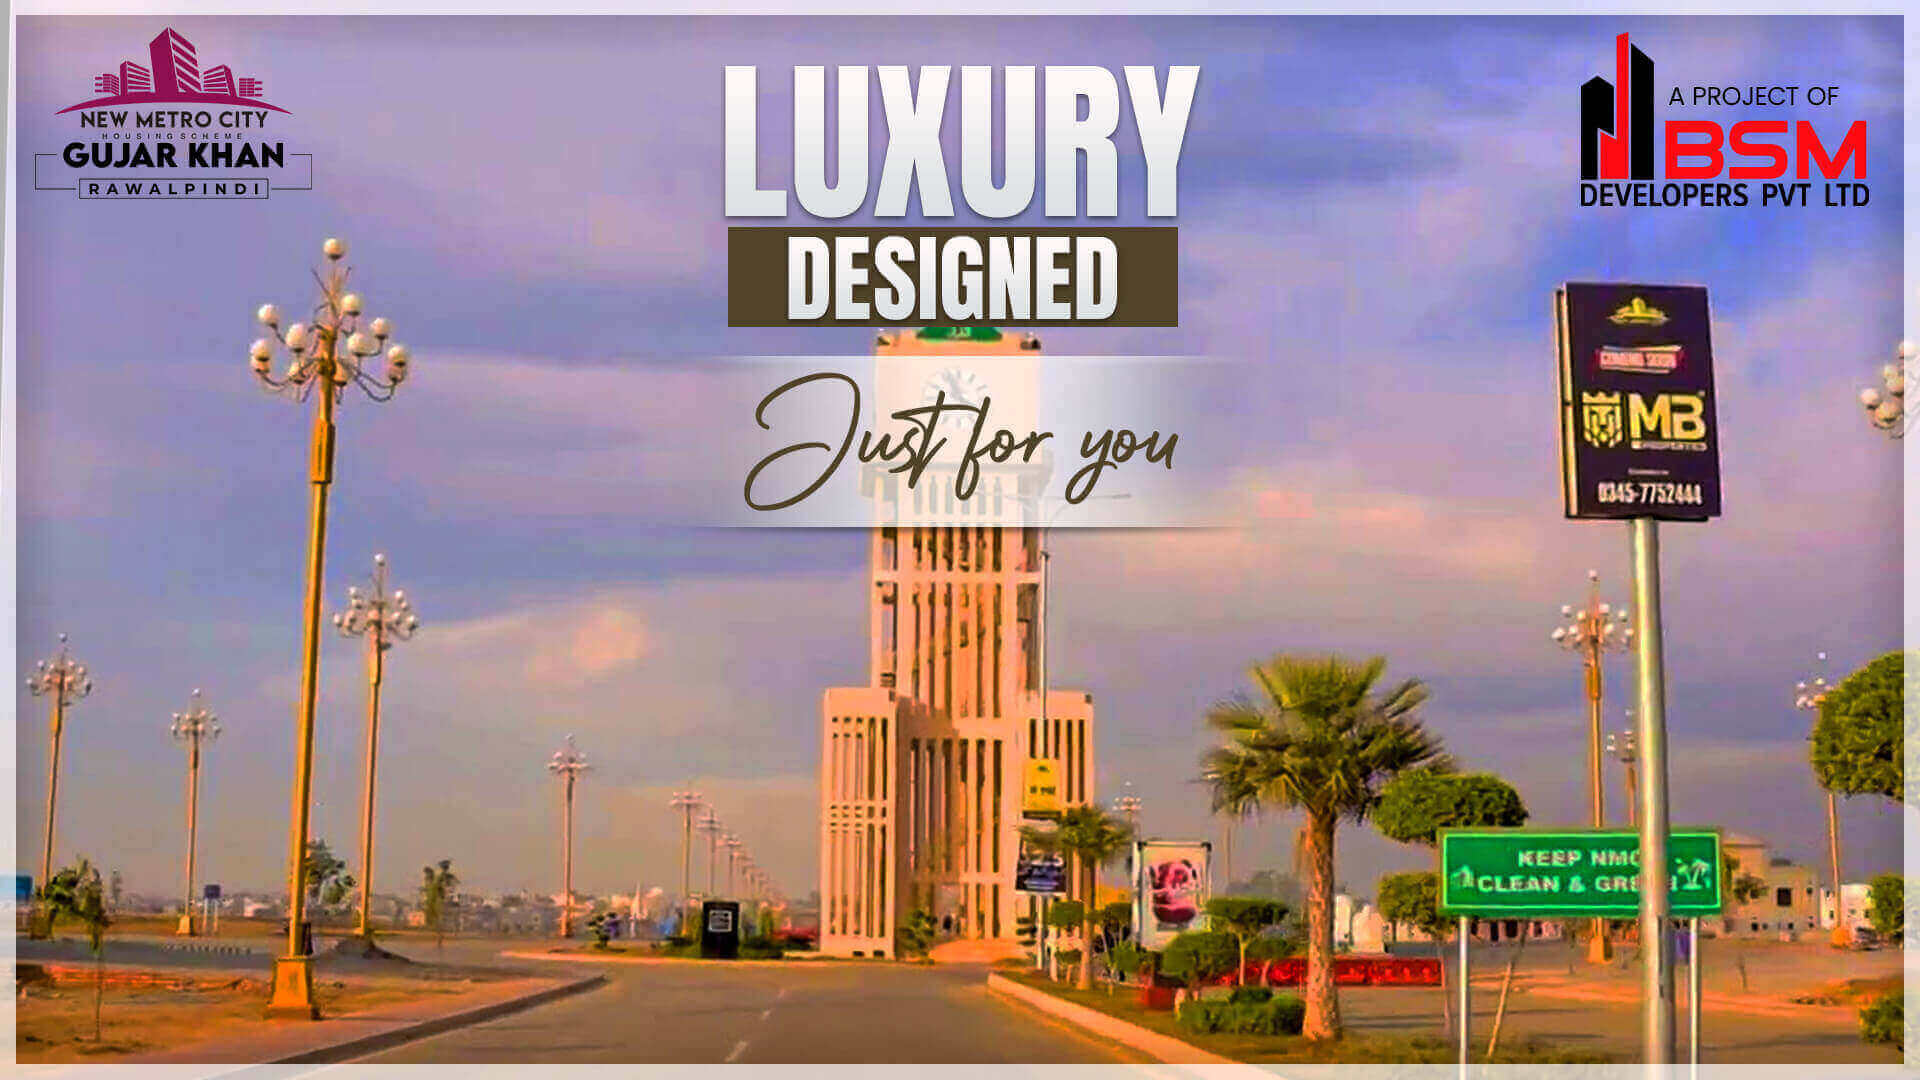 Luxury Designs in New Metro City Gujar Khan